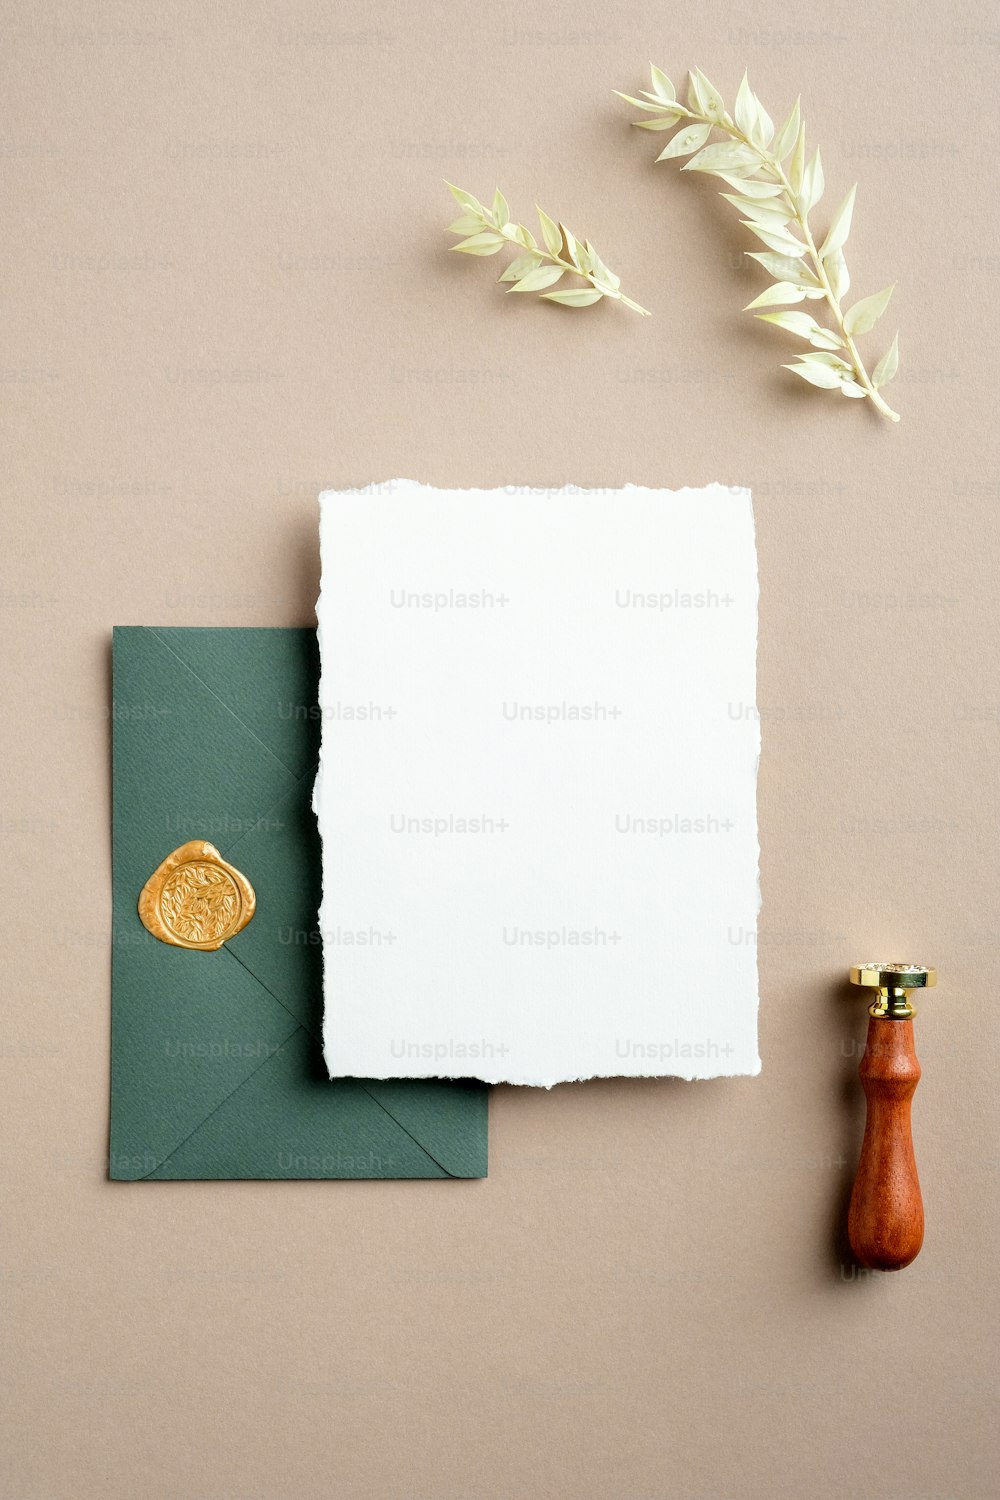 Elegante escena de mockup de papelería de boda. Tarjeta de felicitación en blanco, sobre verde con sello de cera, flores secas sobre fondo beige pastel. Plano, vista superior, vertical.